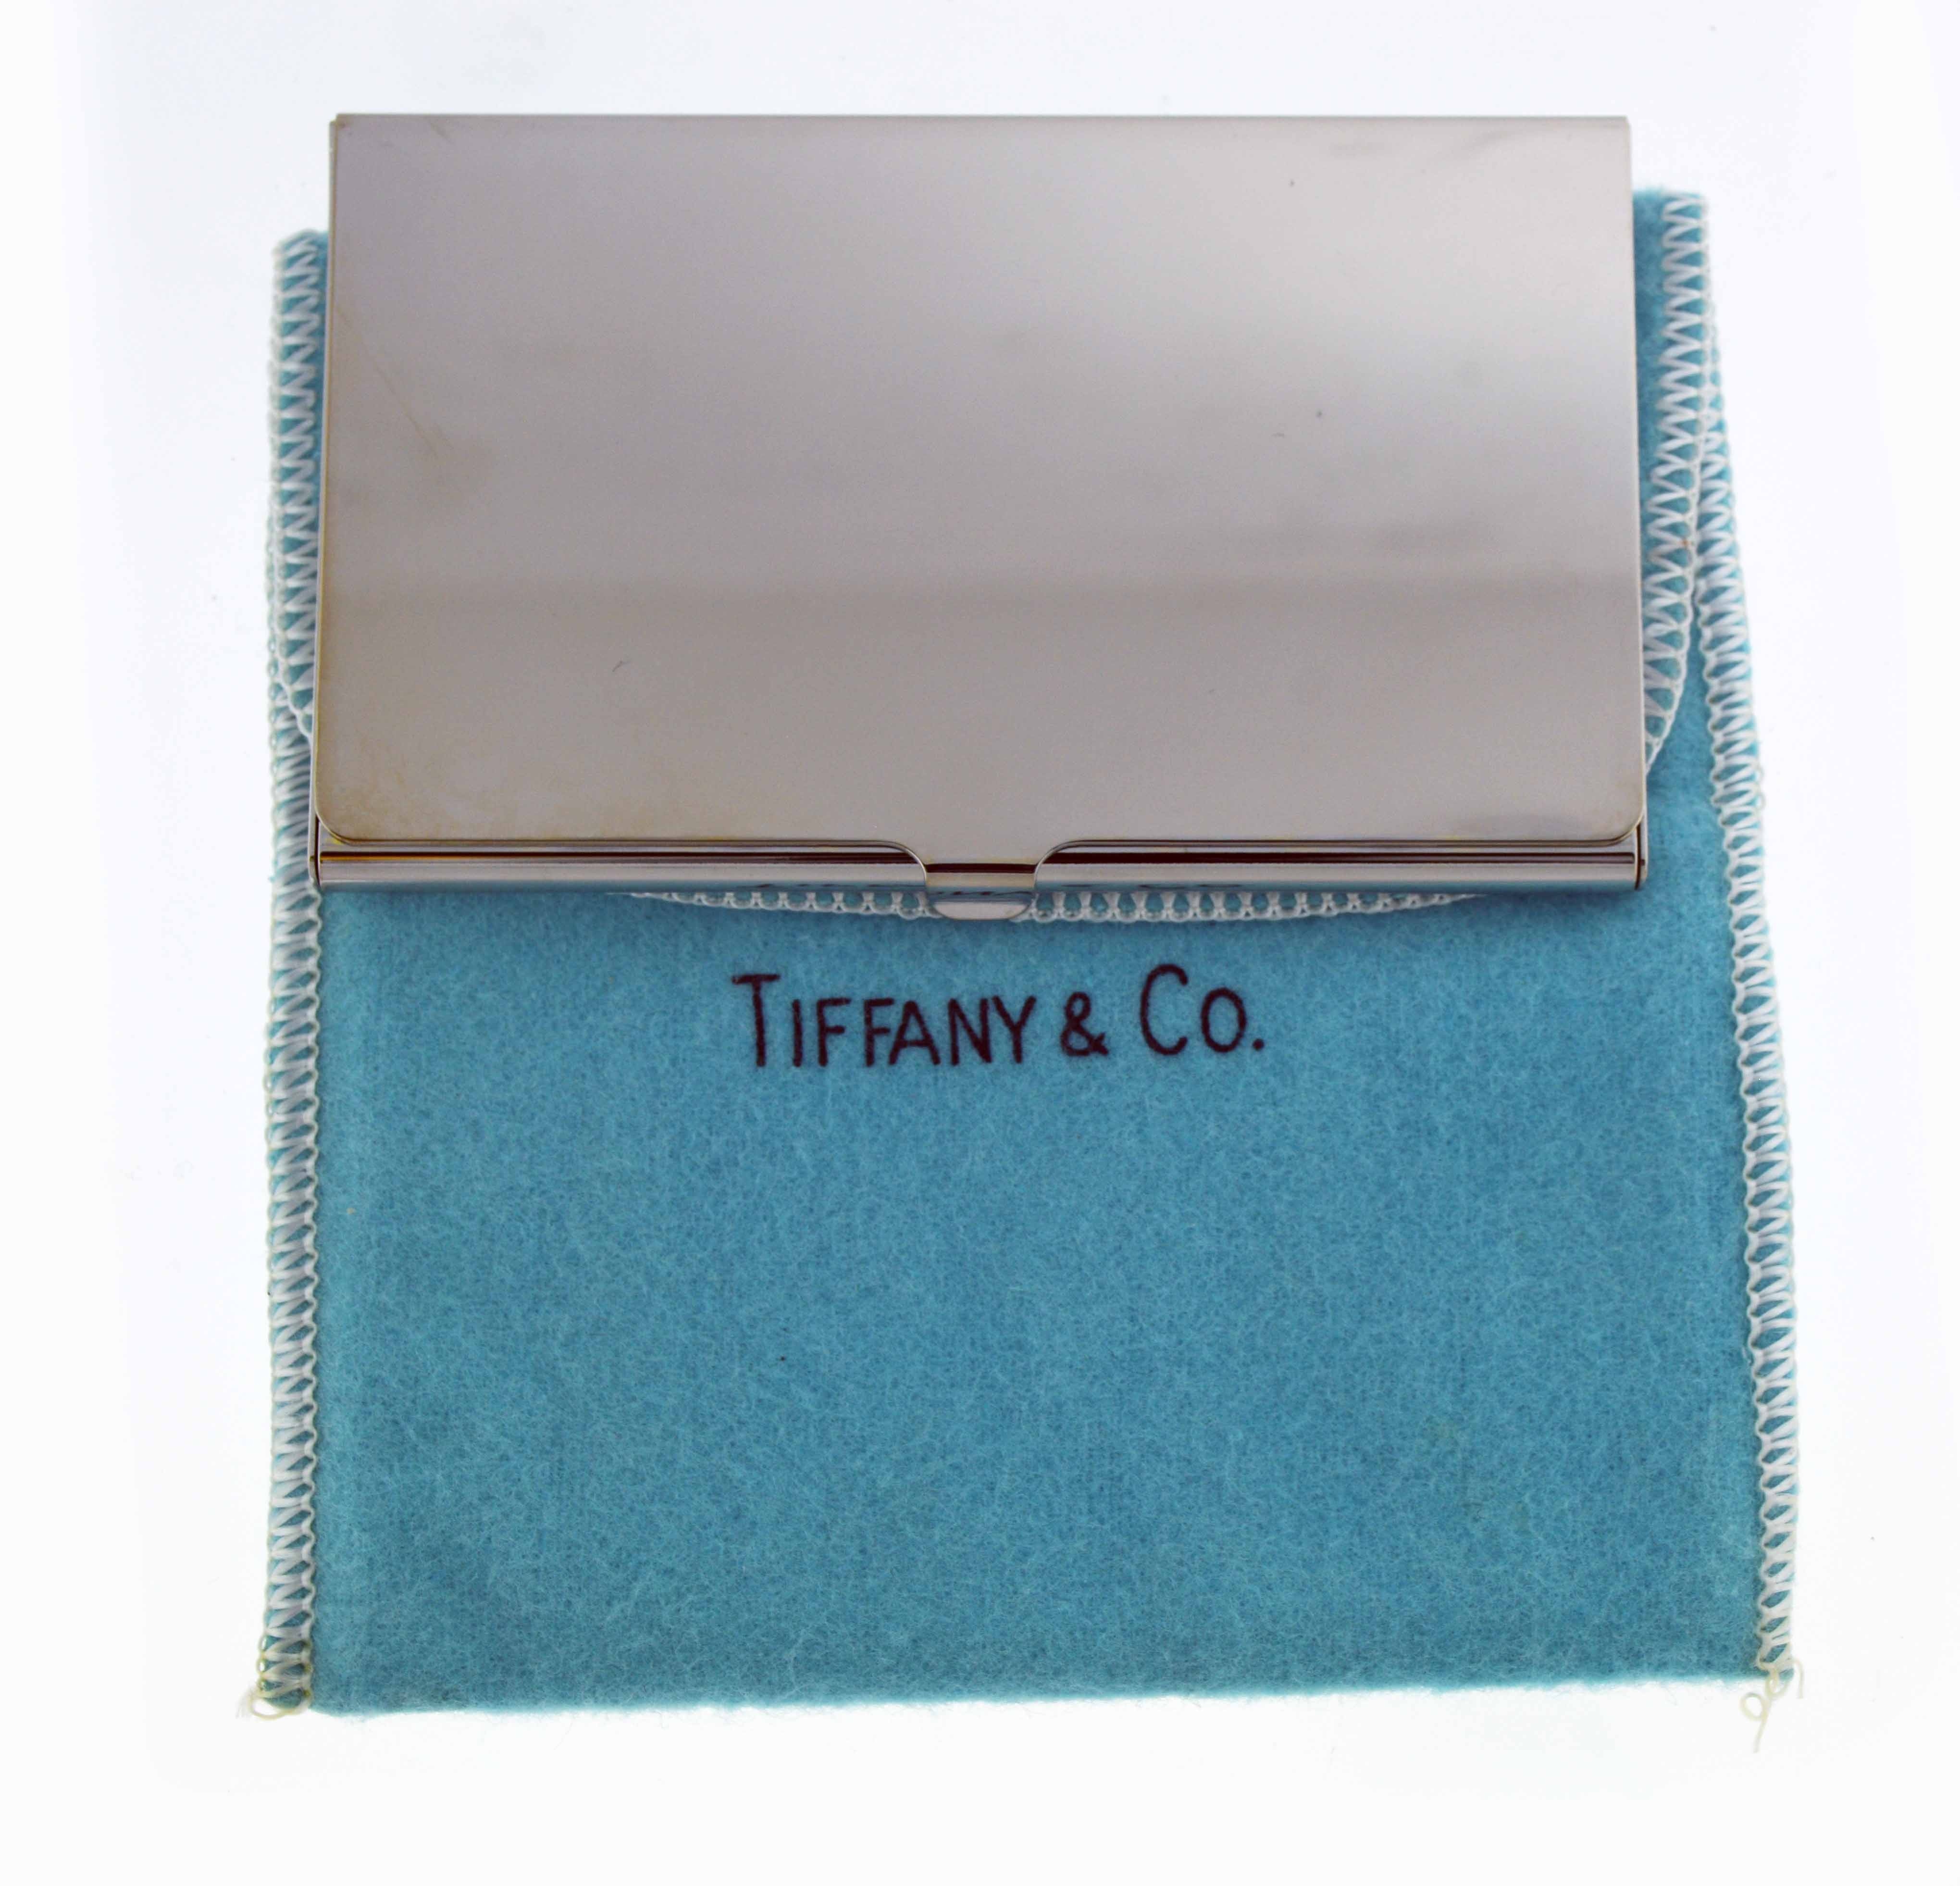 tiffany and co credit card bank